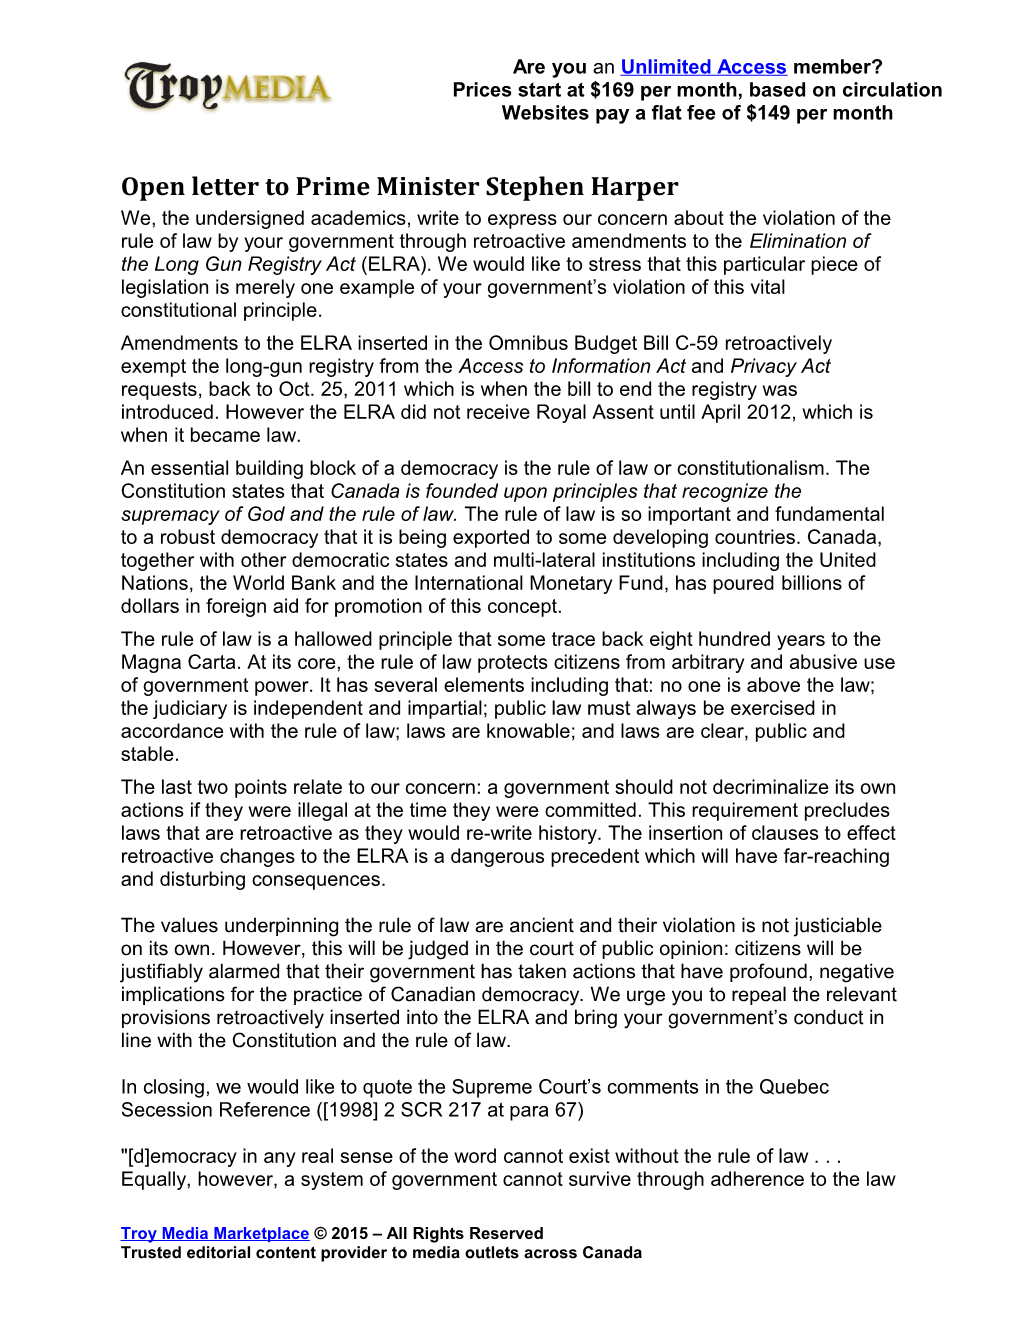 Open Letter to Prime Minister Stephen Harper